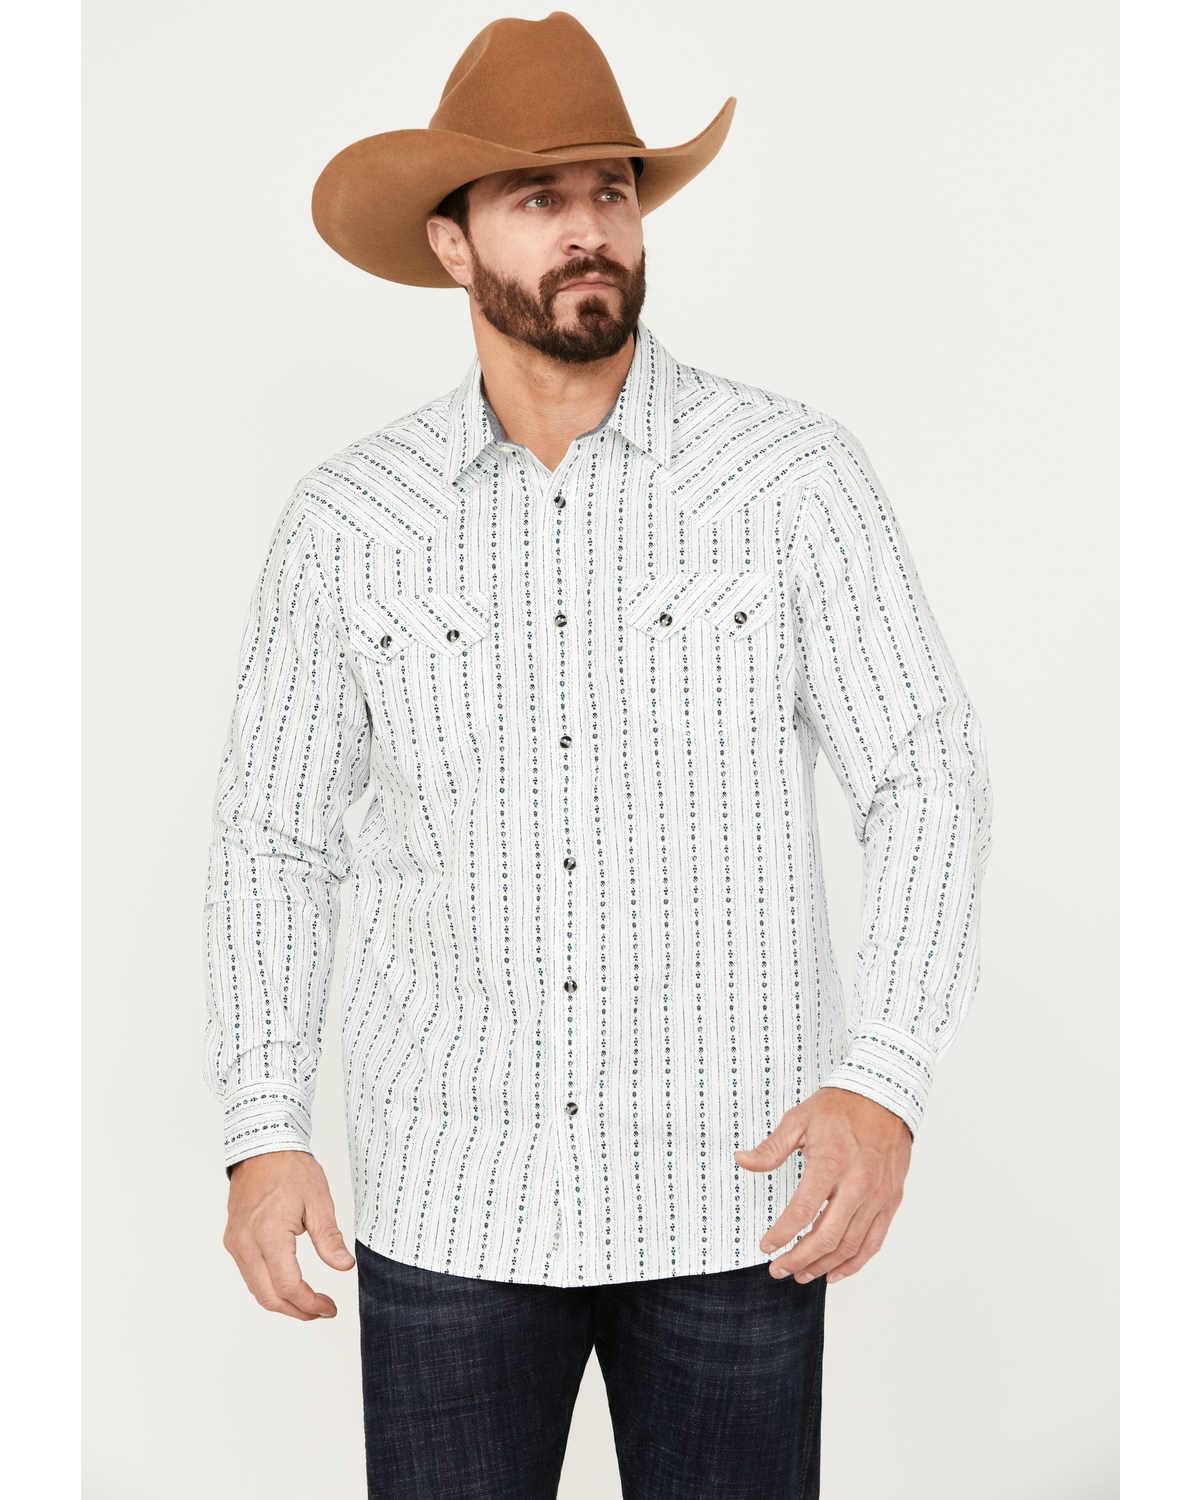 Moonshine Spirit Men's Elderflower Striped Long Sleeve Western Snap Shirt